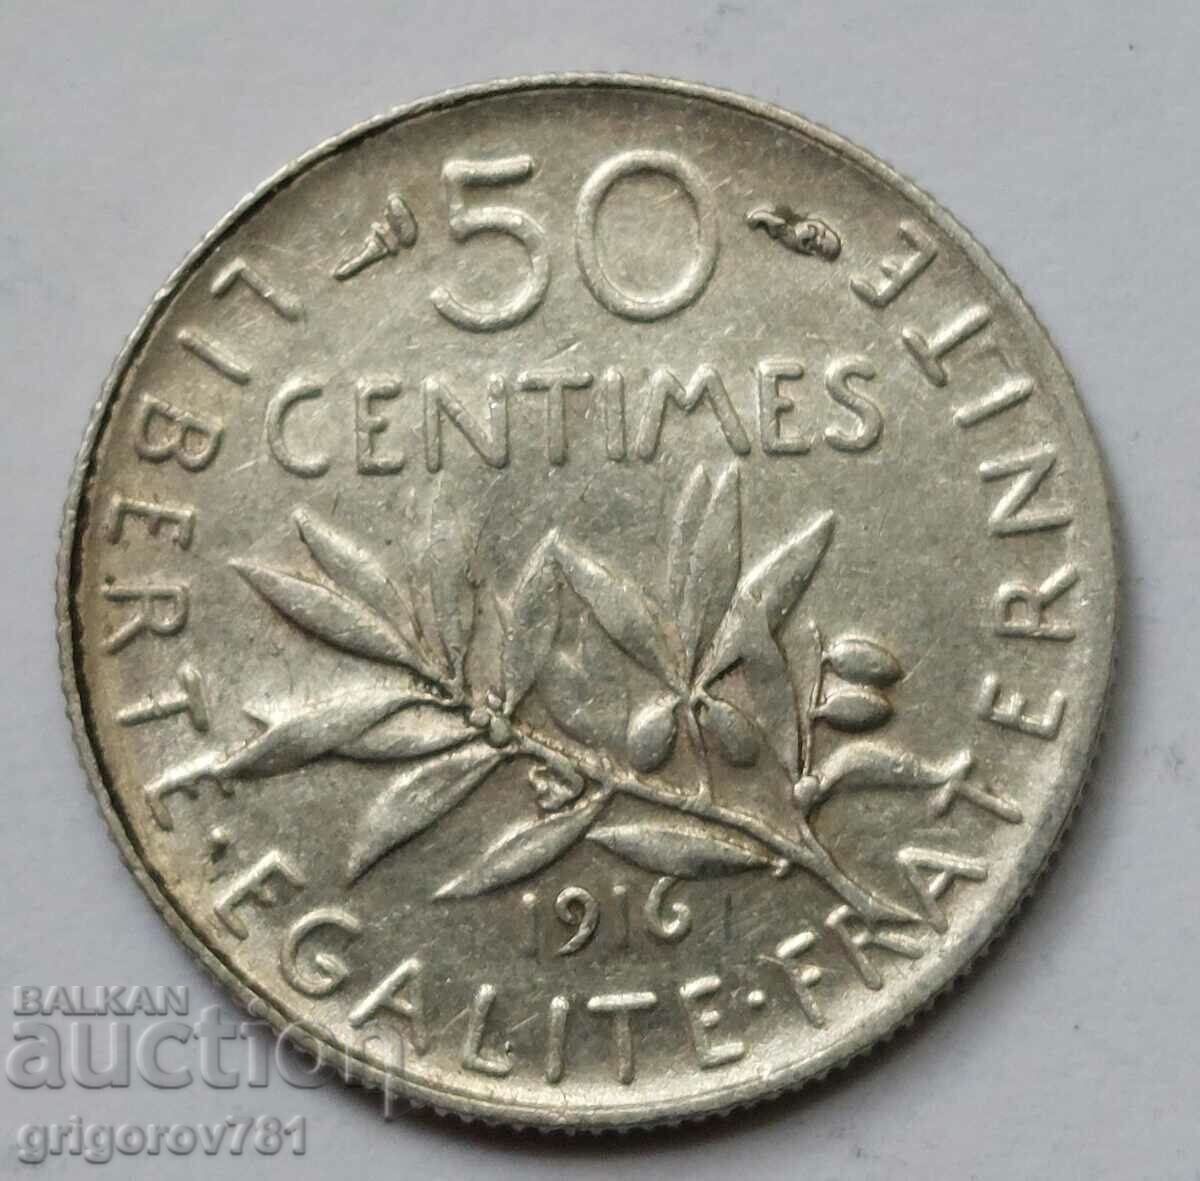 Ασημένιο 50 εκατοστά Γαλλία 1916 - ασημένιο νόμισμα №3